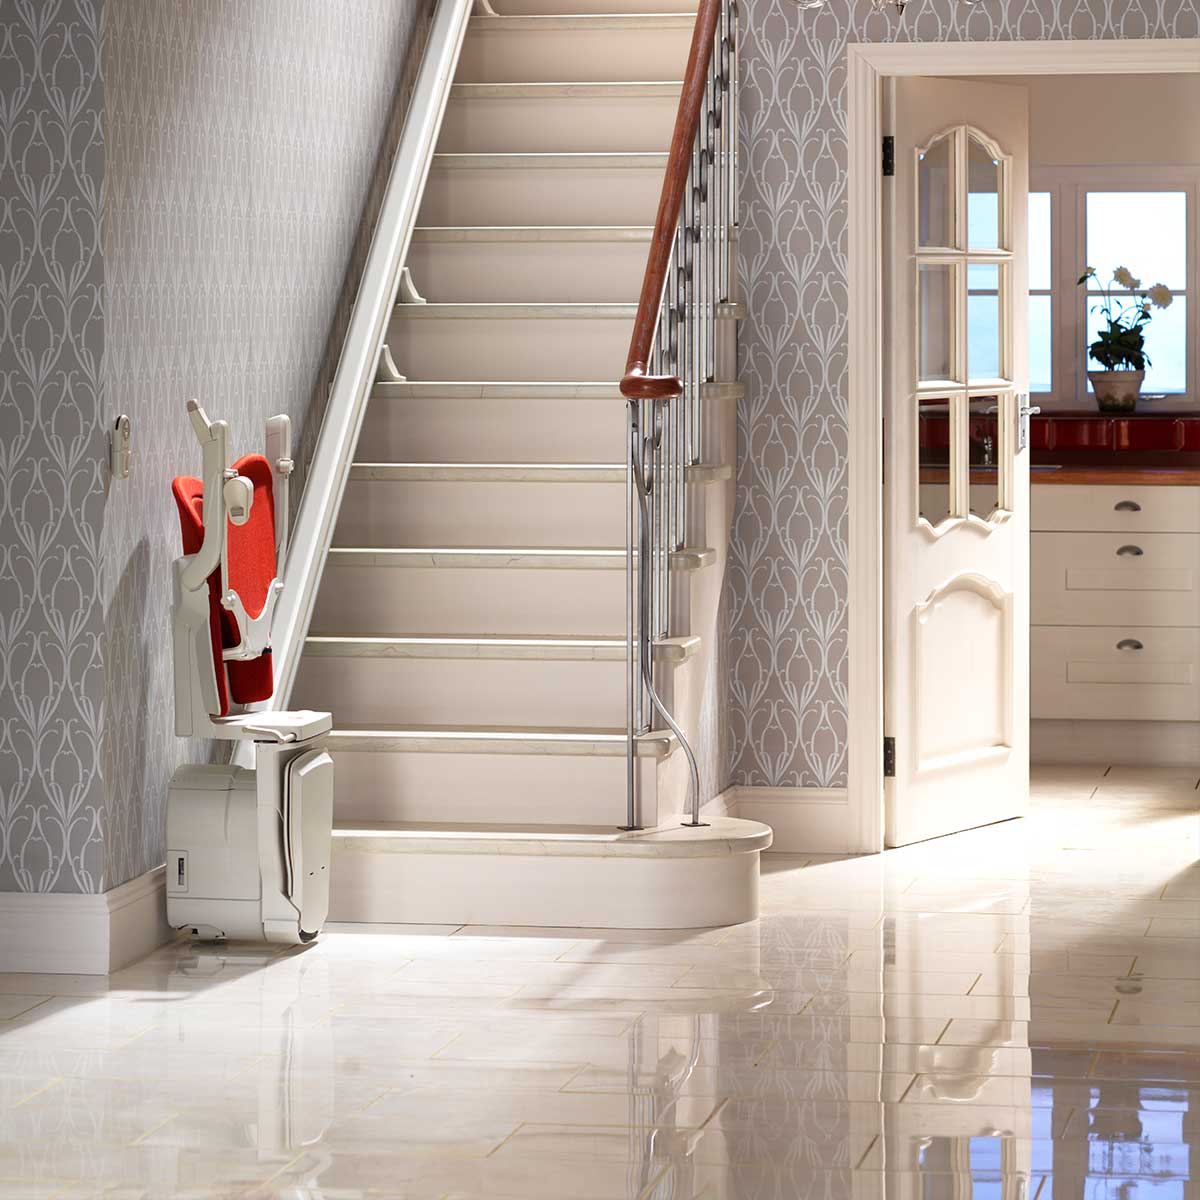 Ein helles elegantes Wohninterieur mit einer Treppe mit eingebautem Treppenlift poliertem weißen Fliesenboden und einer teilweise sichtbaren offenen Tür die in einen anderen Raum führt